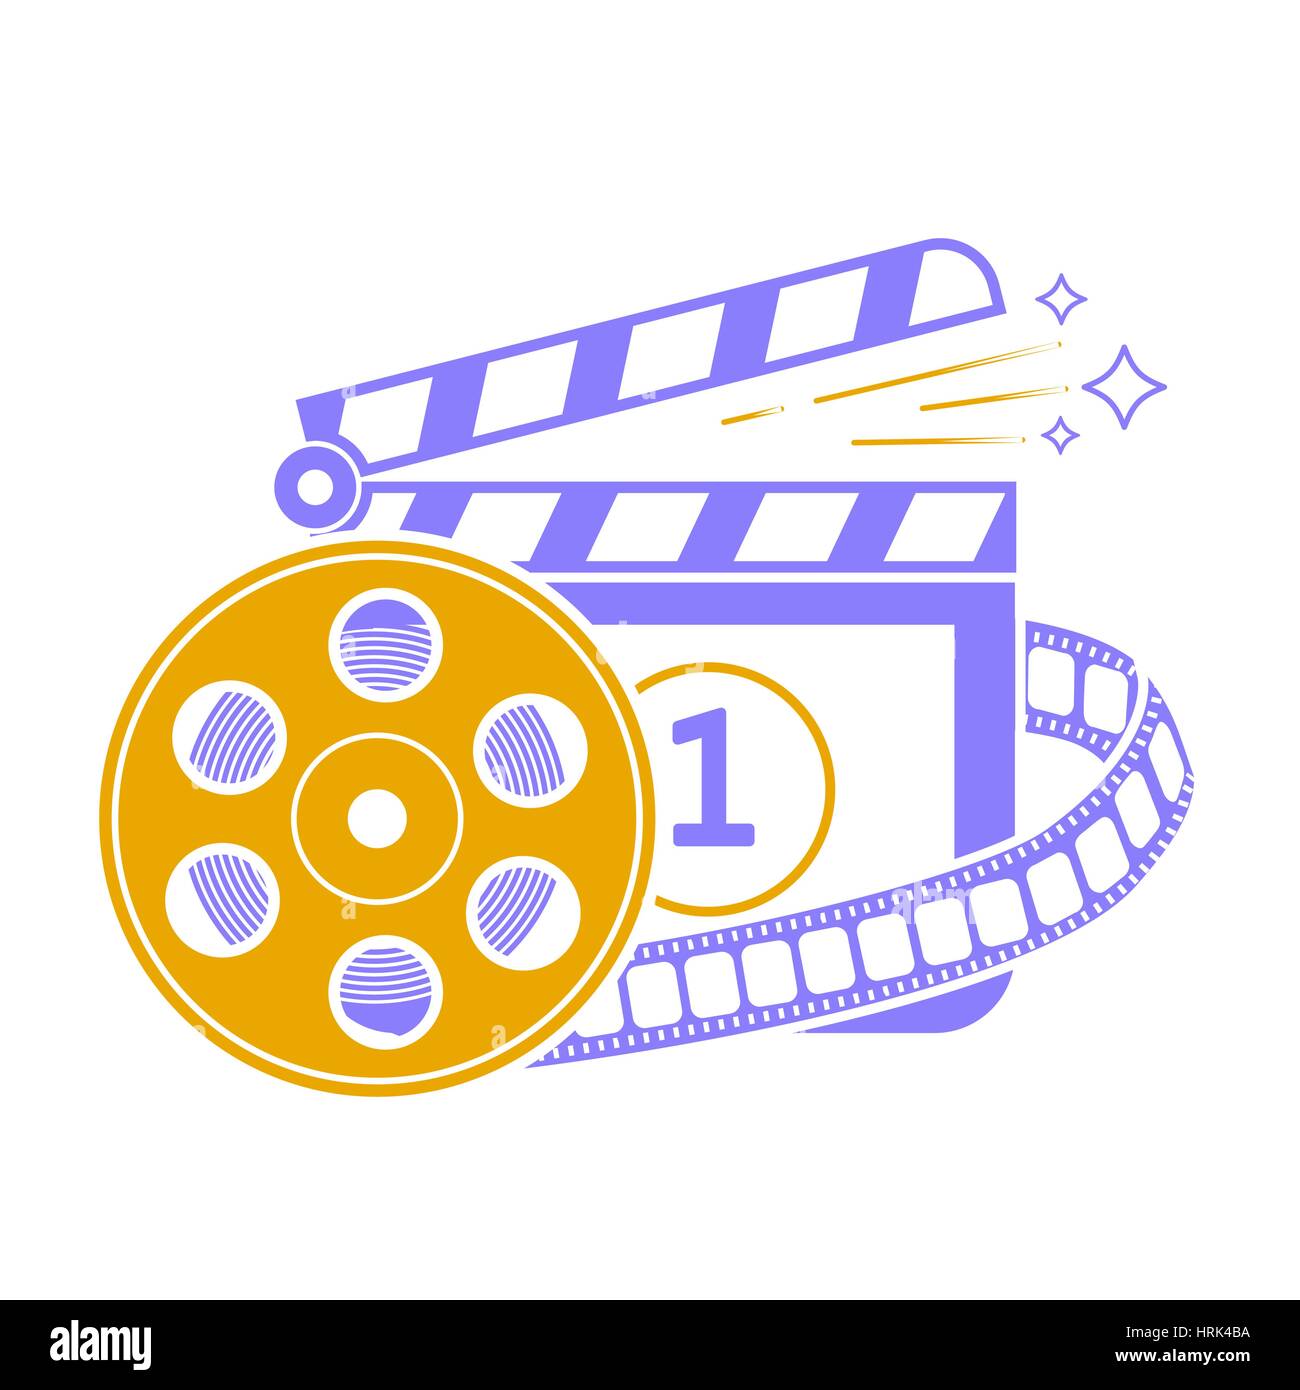 Illustration de cinema clapper board d'icône et de forme d'un film dans un style linéaire Illustration de Vecteur